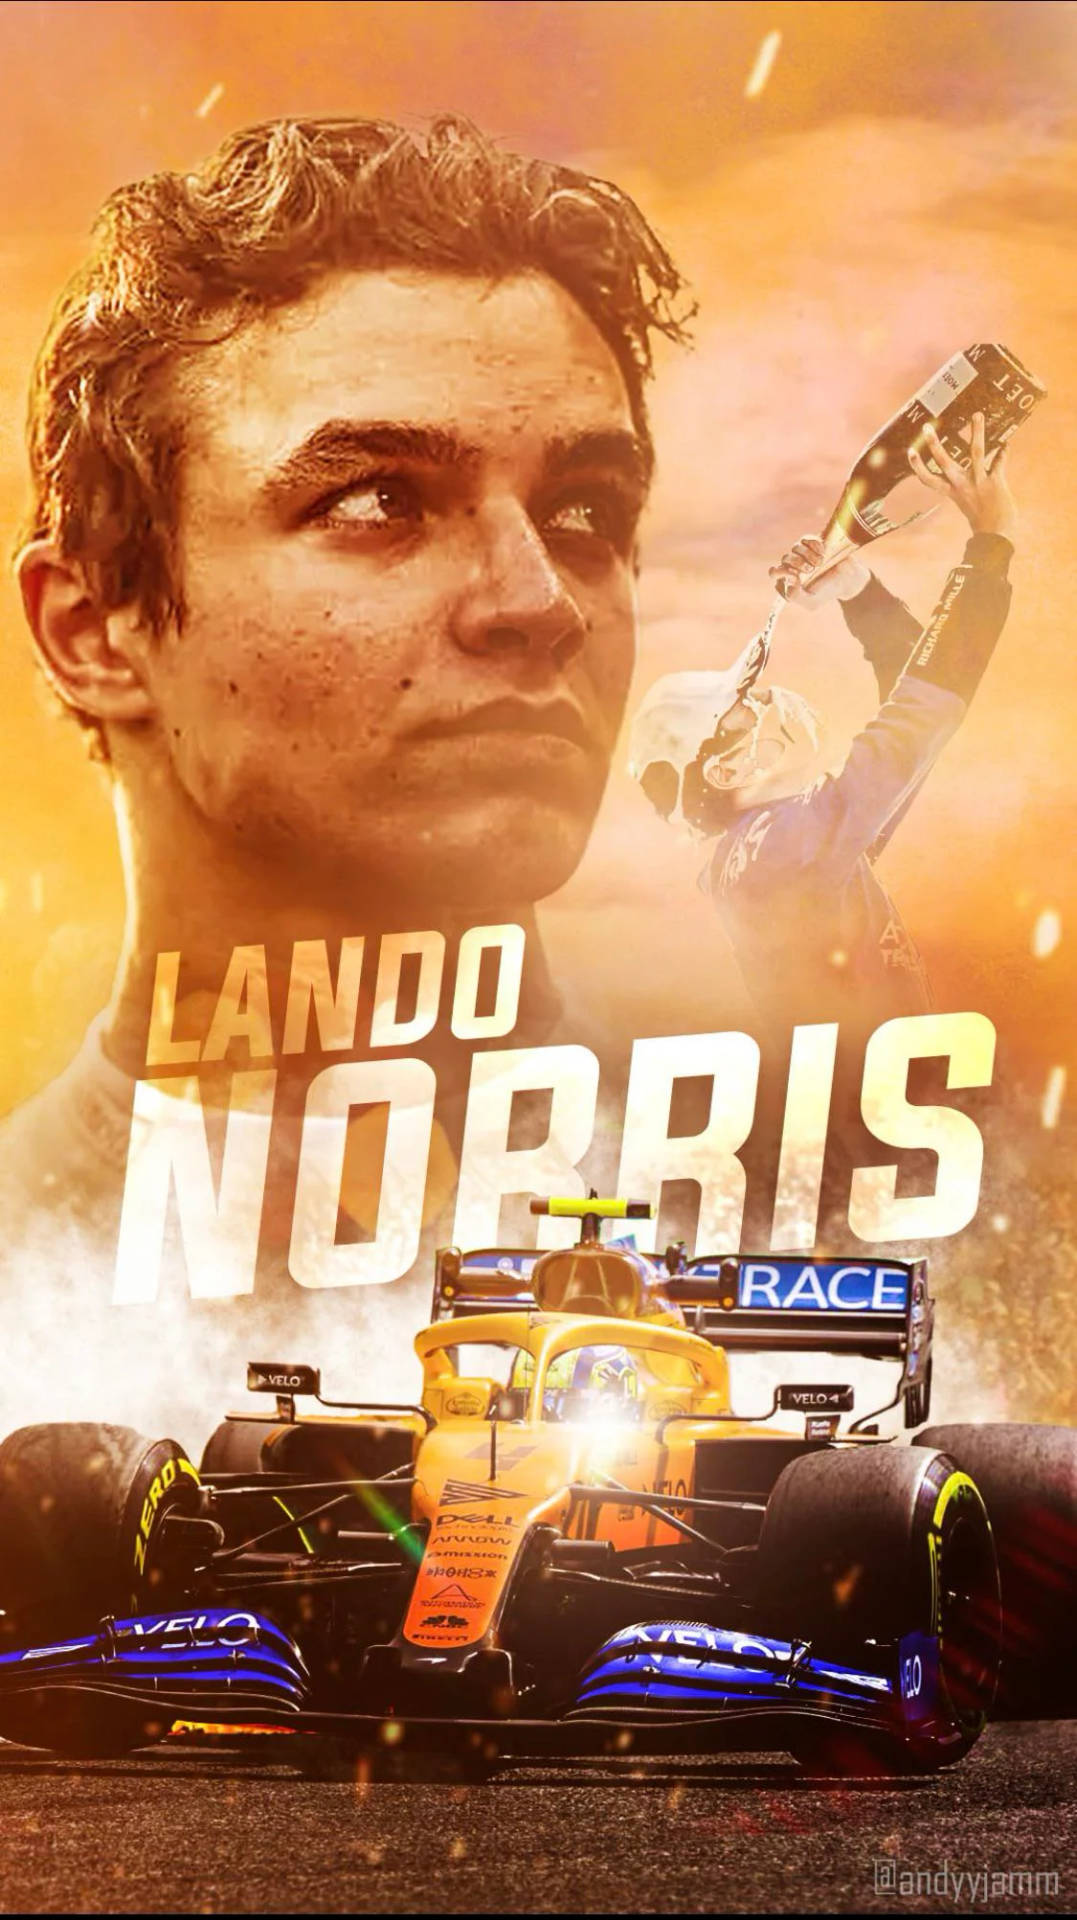 Orange Lando Norris Poster Wallpaper